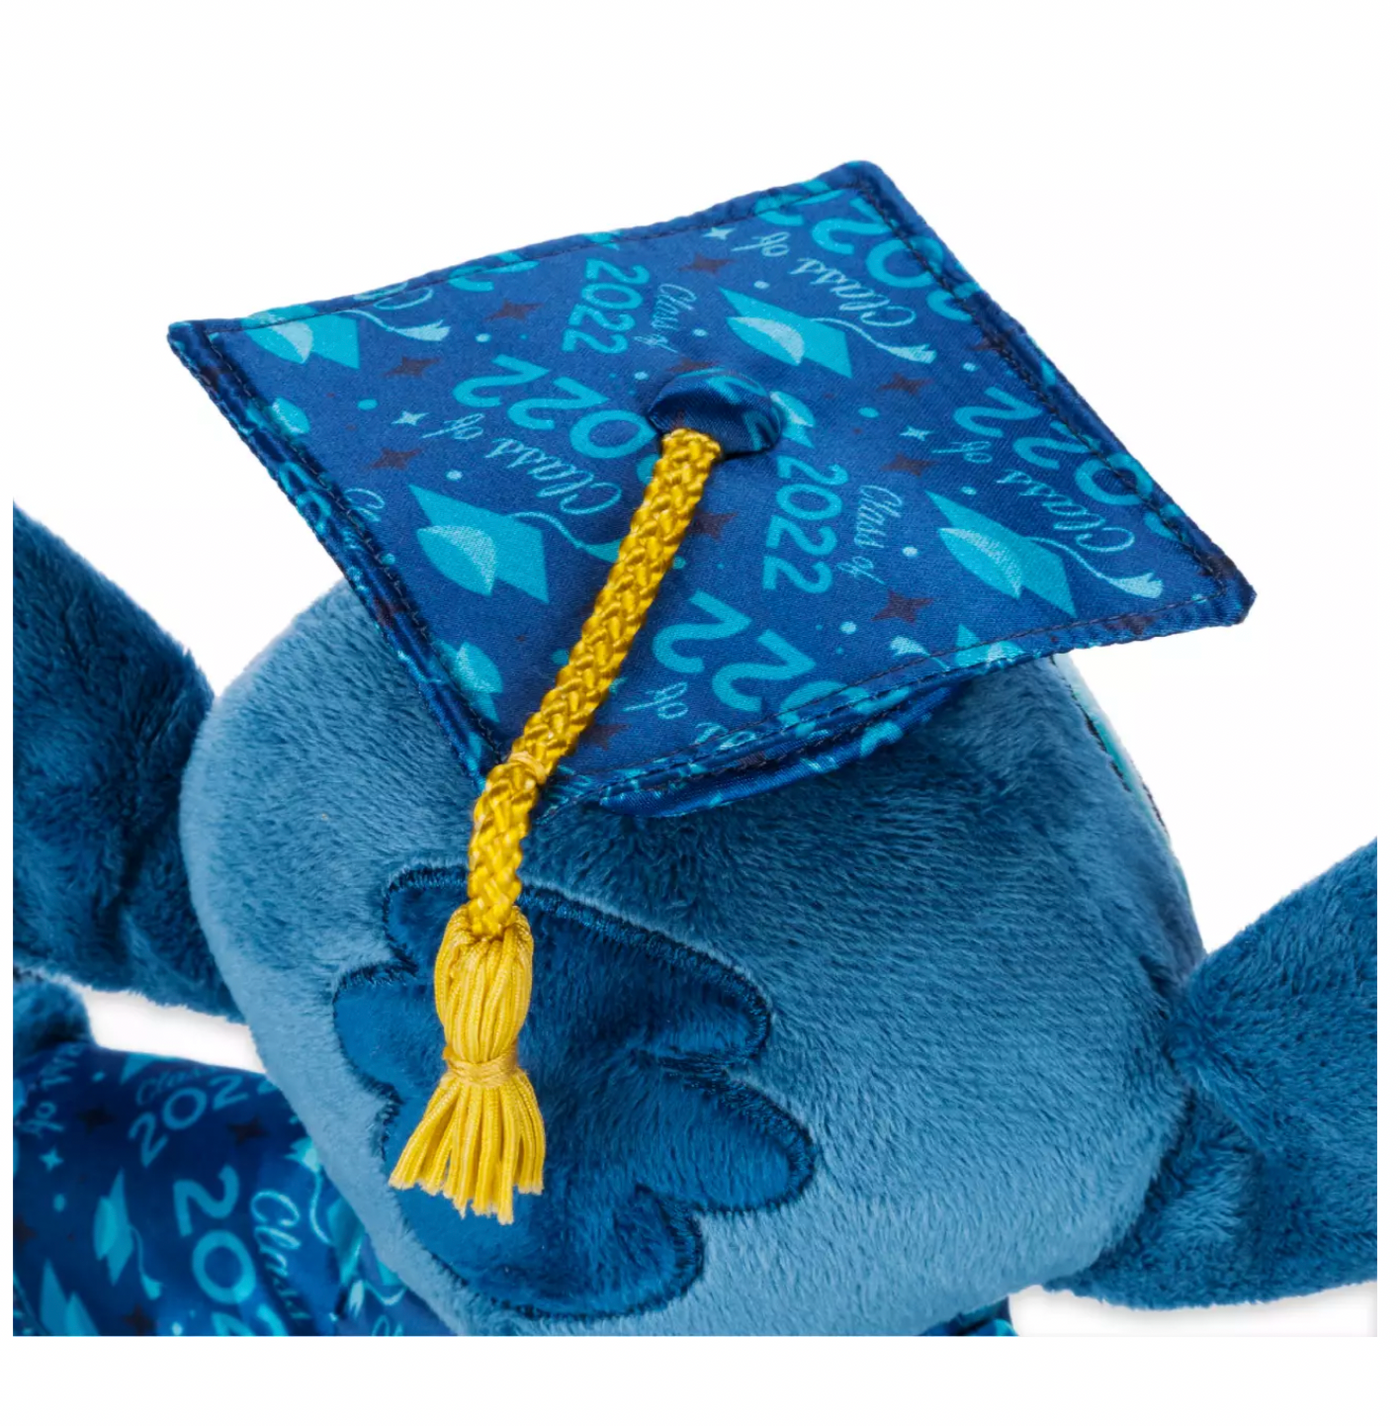 Disney Parks Graduation Day 2022 Stitch Plush New with Tag